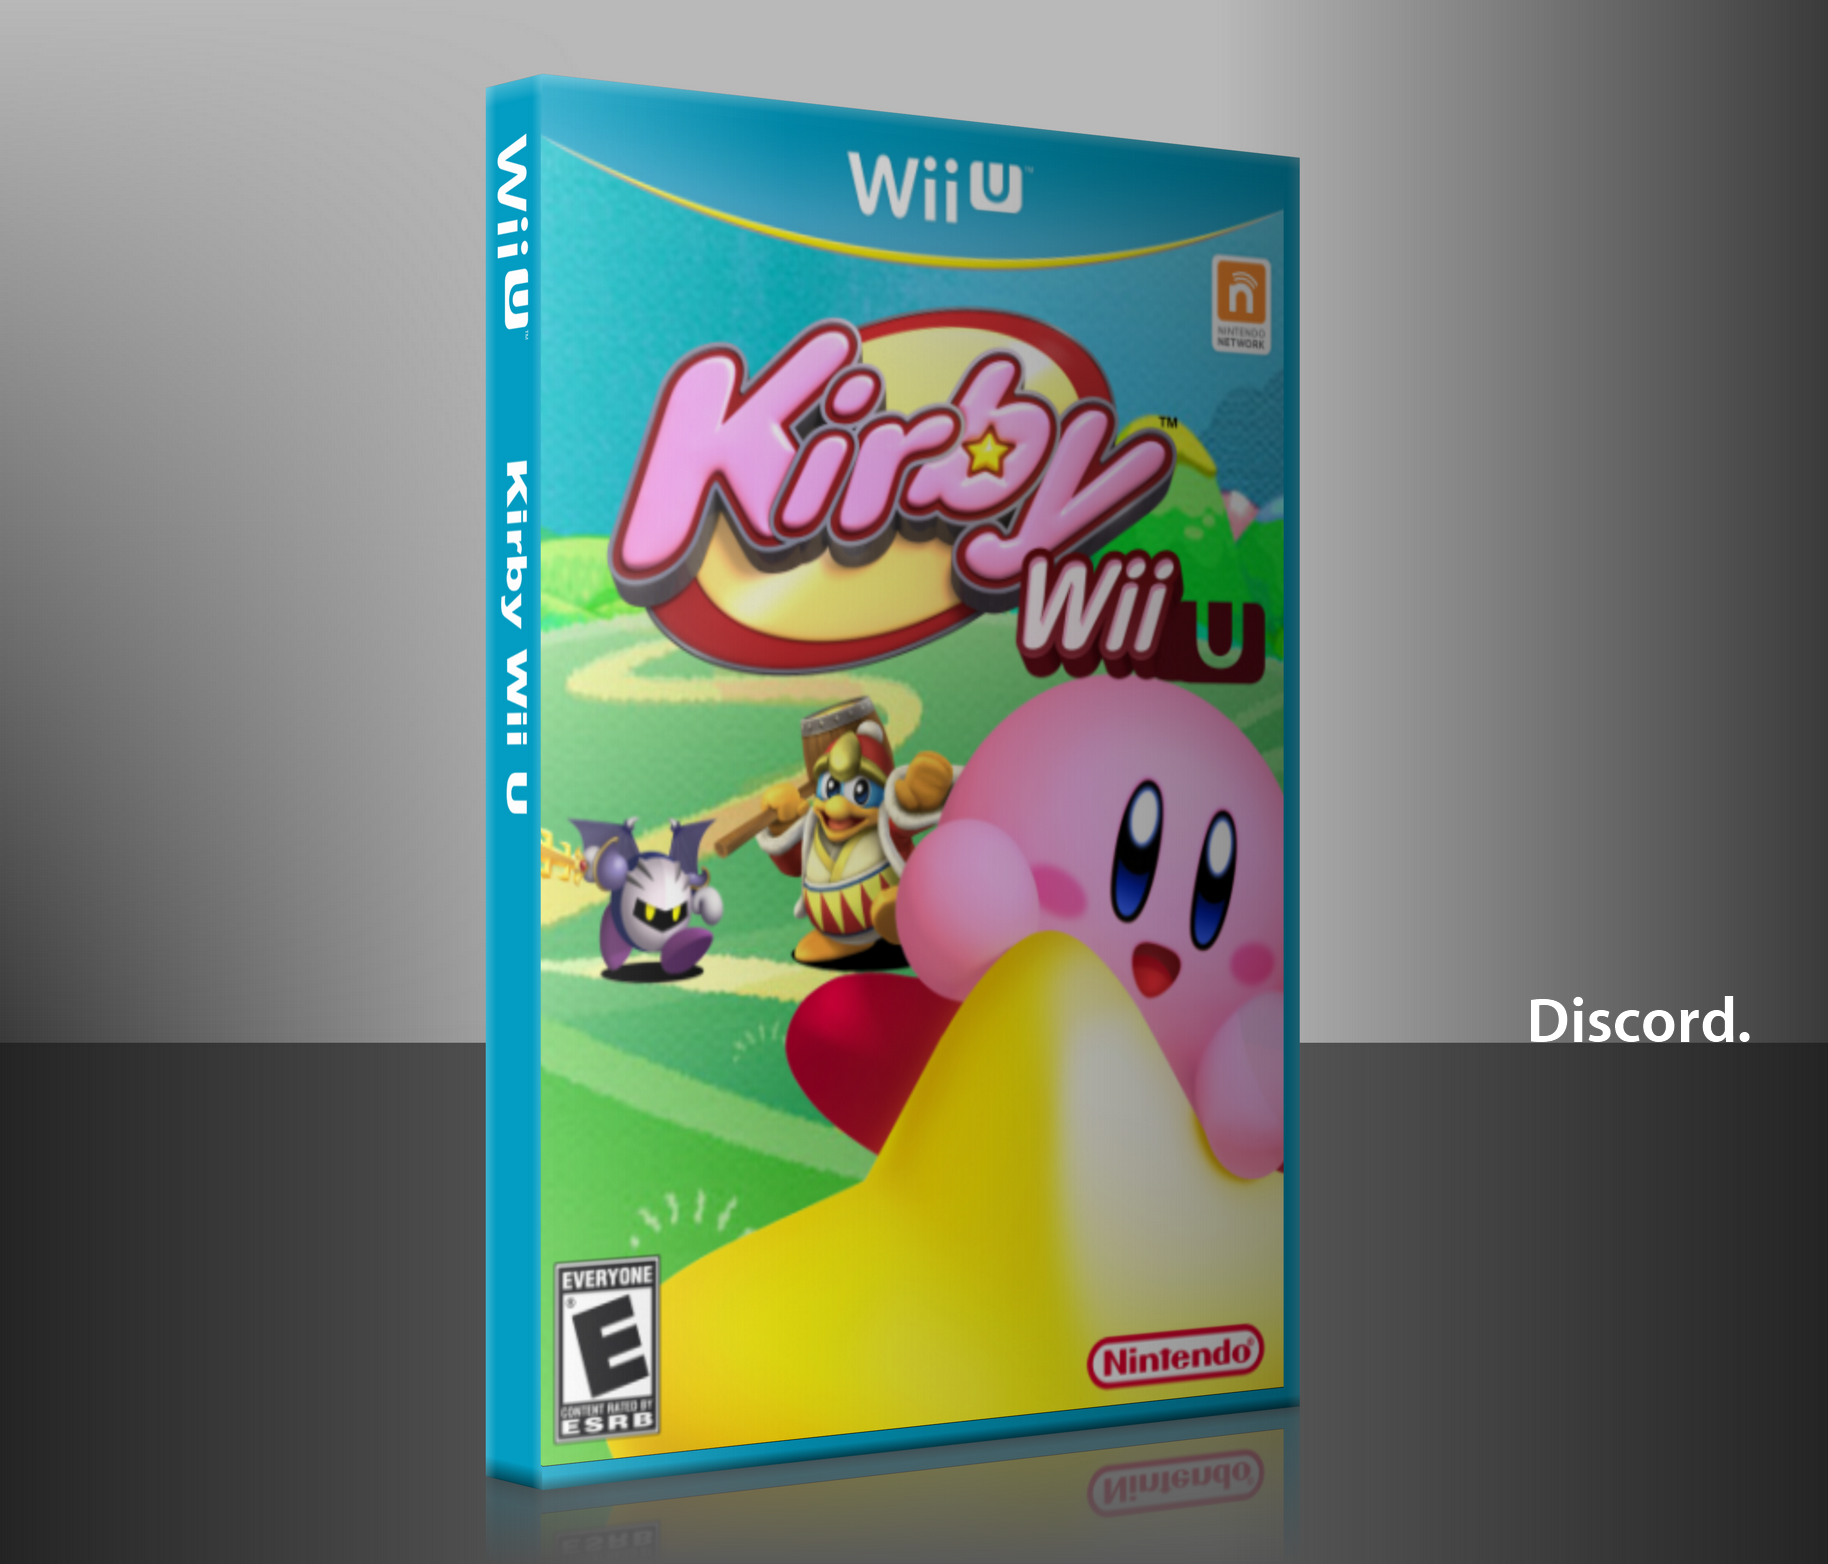 Kirby Wii U box cover